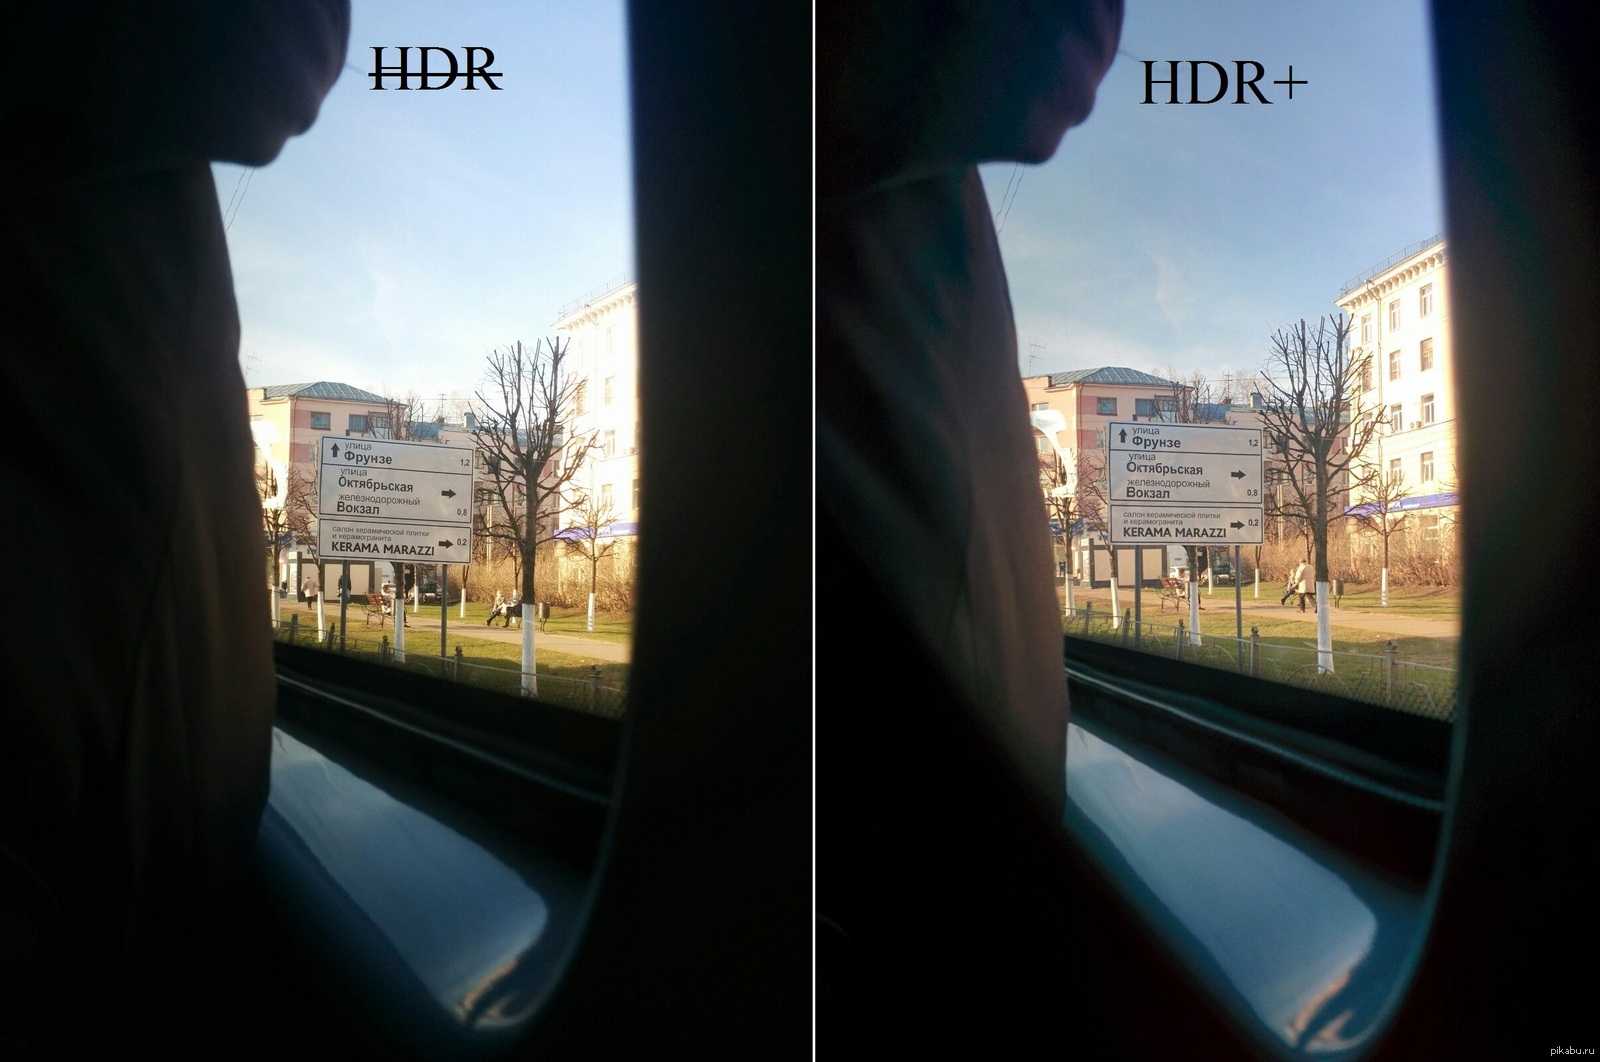 Режим съемки hdr в камере: что это такое и в чем отличие фотографий hdr